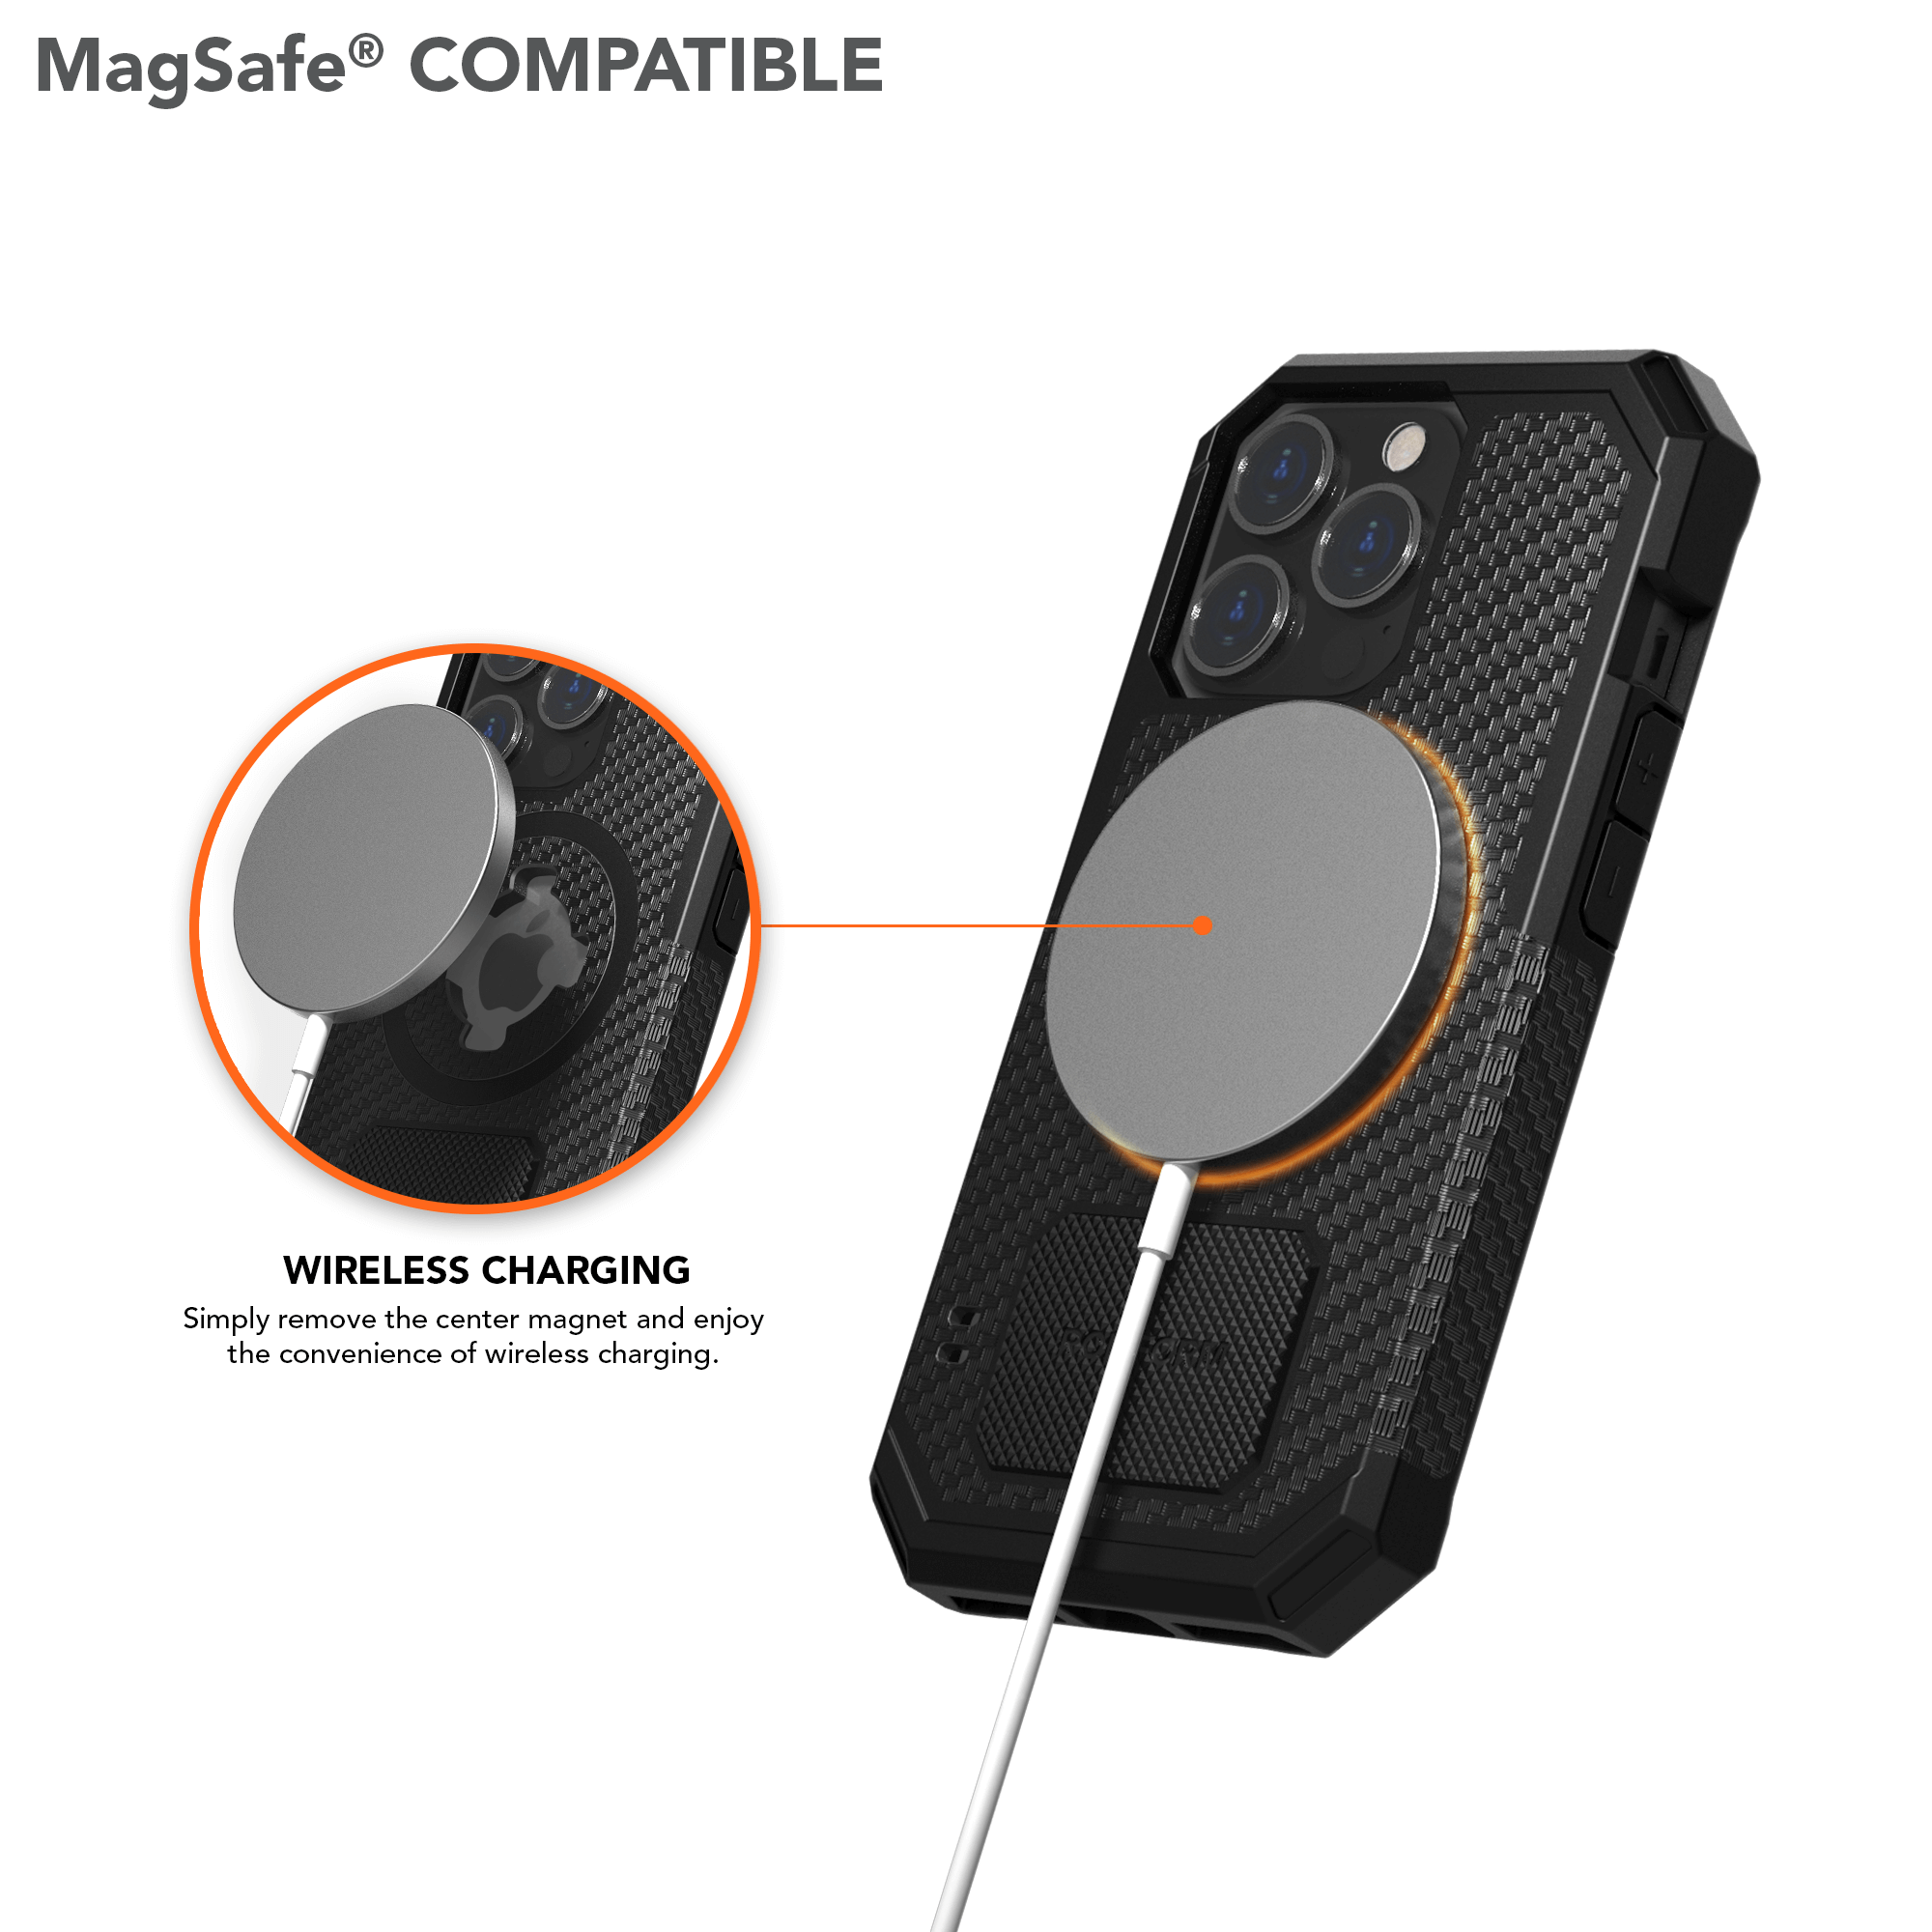 MagSafe Magnet Wandhalter iPhone Zubehör online kaufen